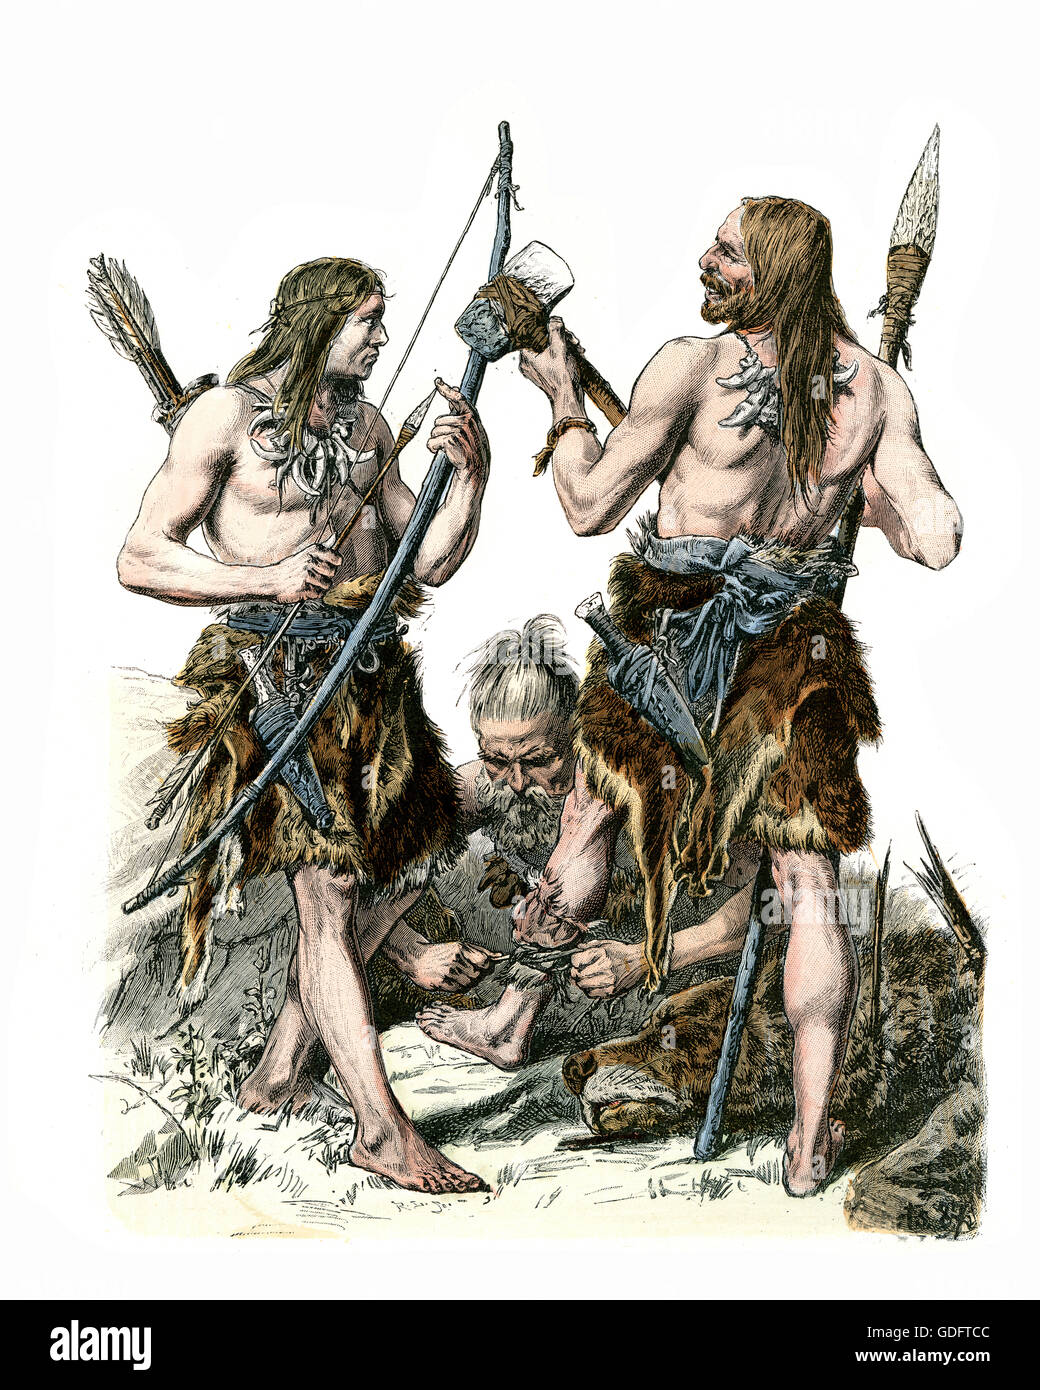 Las modas de la Edad de Piedra, cazadores alemán vistiendo pieles de animales con hacha de piedra y lanza Foto de stock